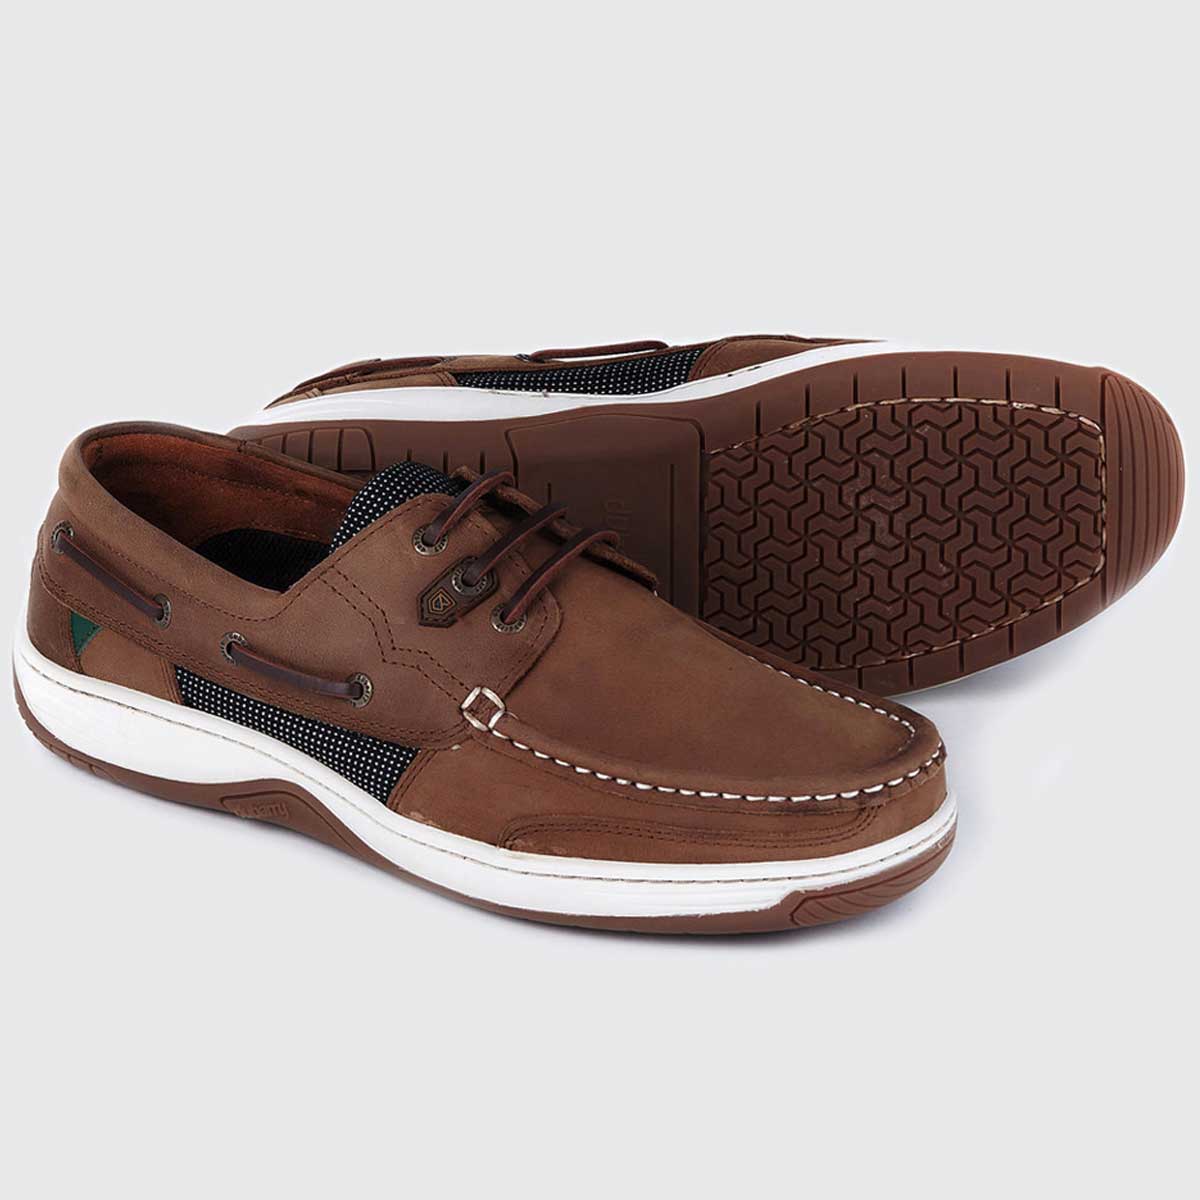 Dubarry Regatta Deck Shoes - Men's - 6 Colour Options